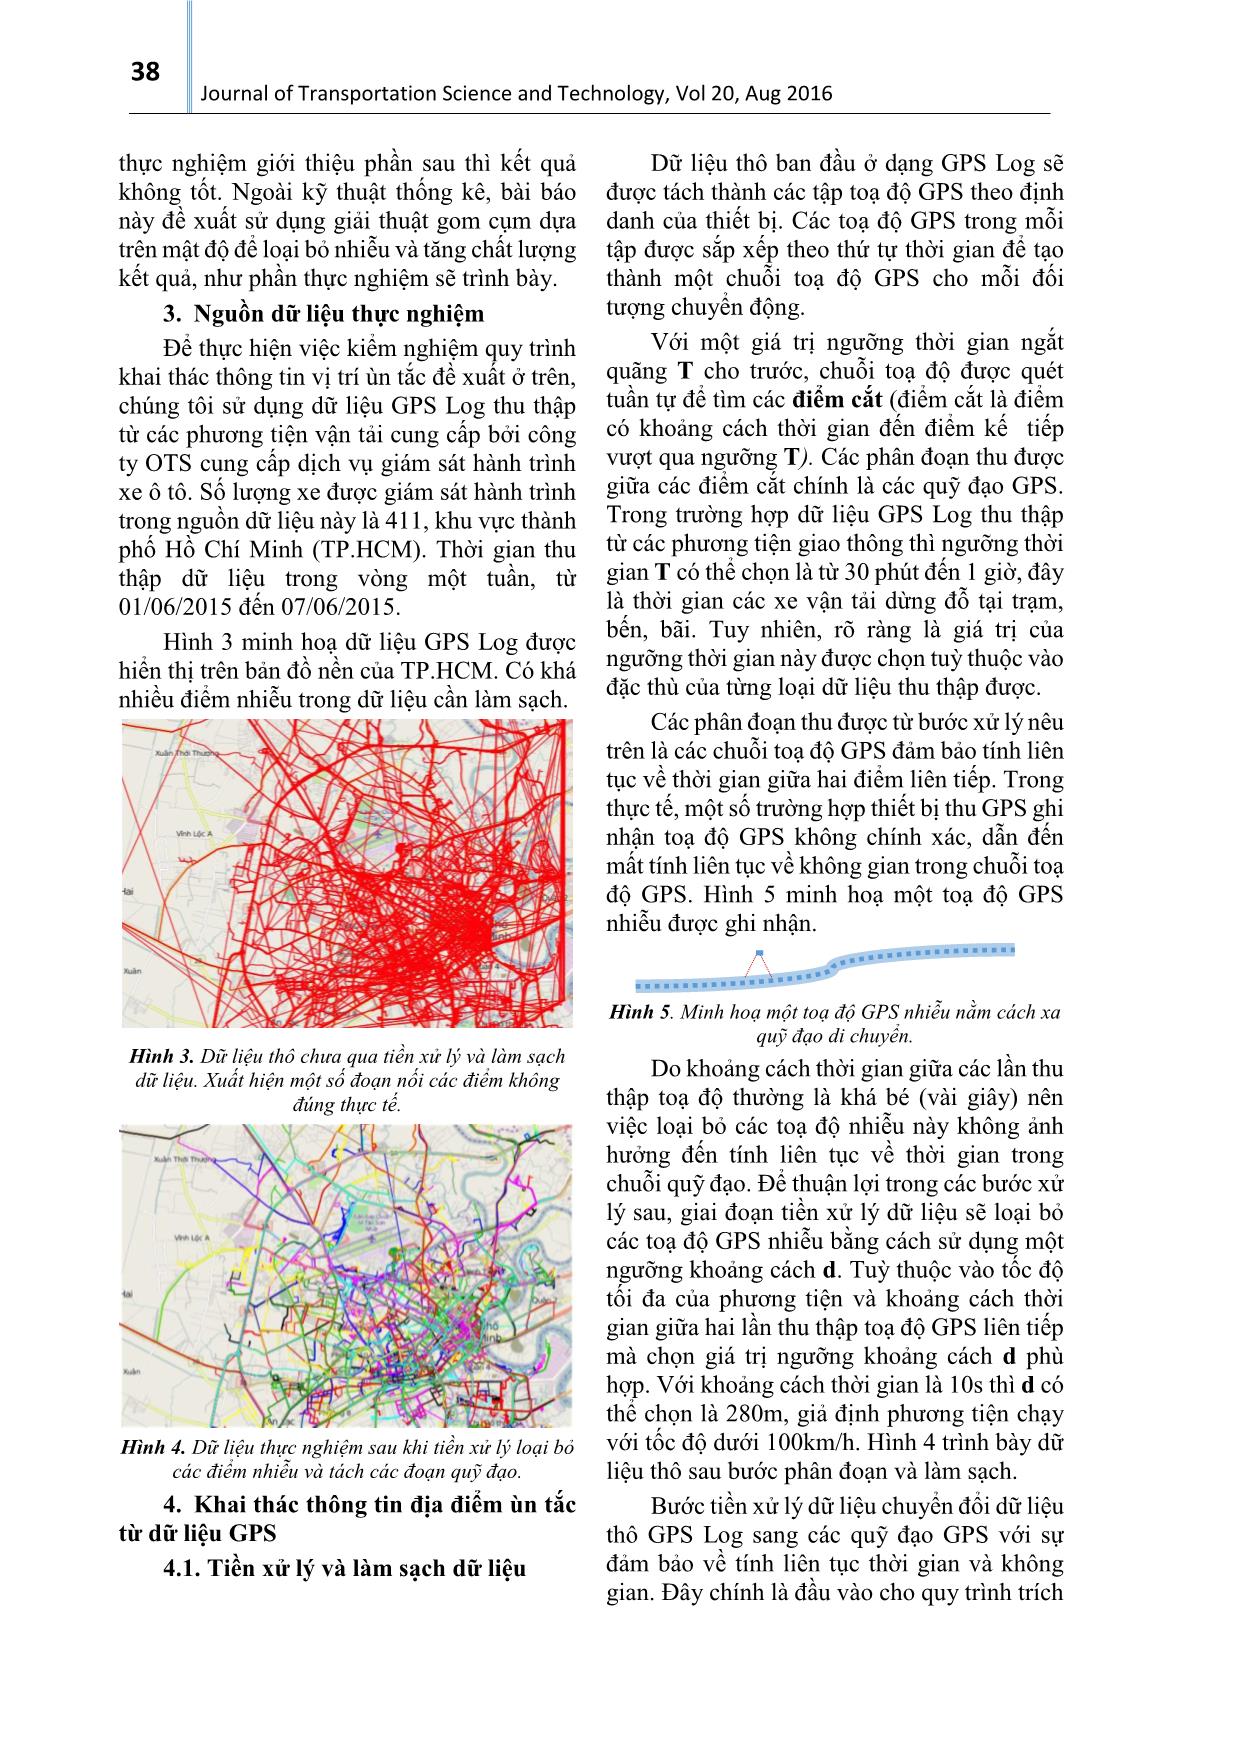 Khai thác thông tin tình trạng ùn tắc giao thông từ dữ liệu GPS - Trường hợp thành phố Hồ Chí Minh trang 3